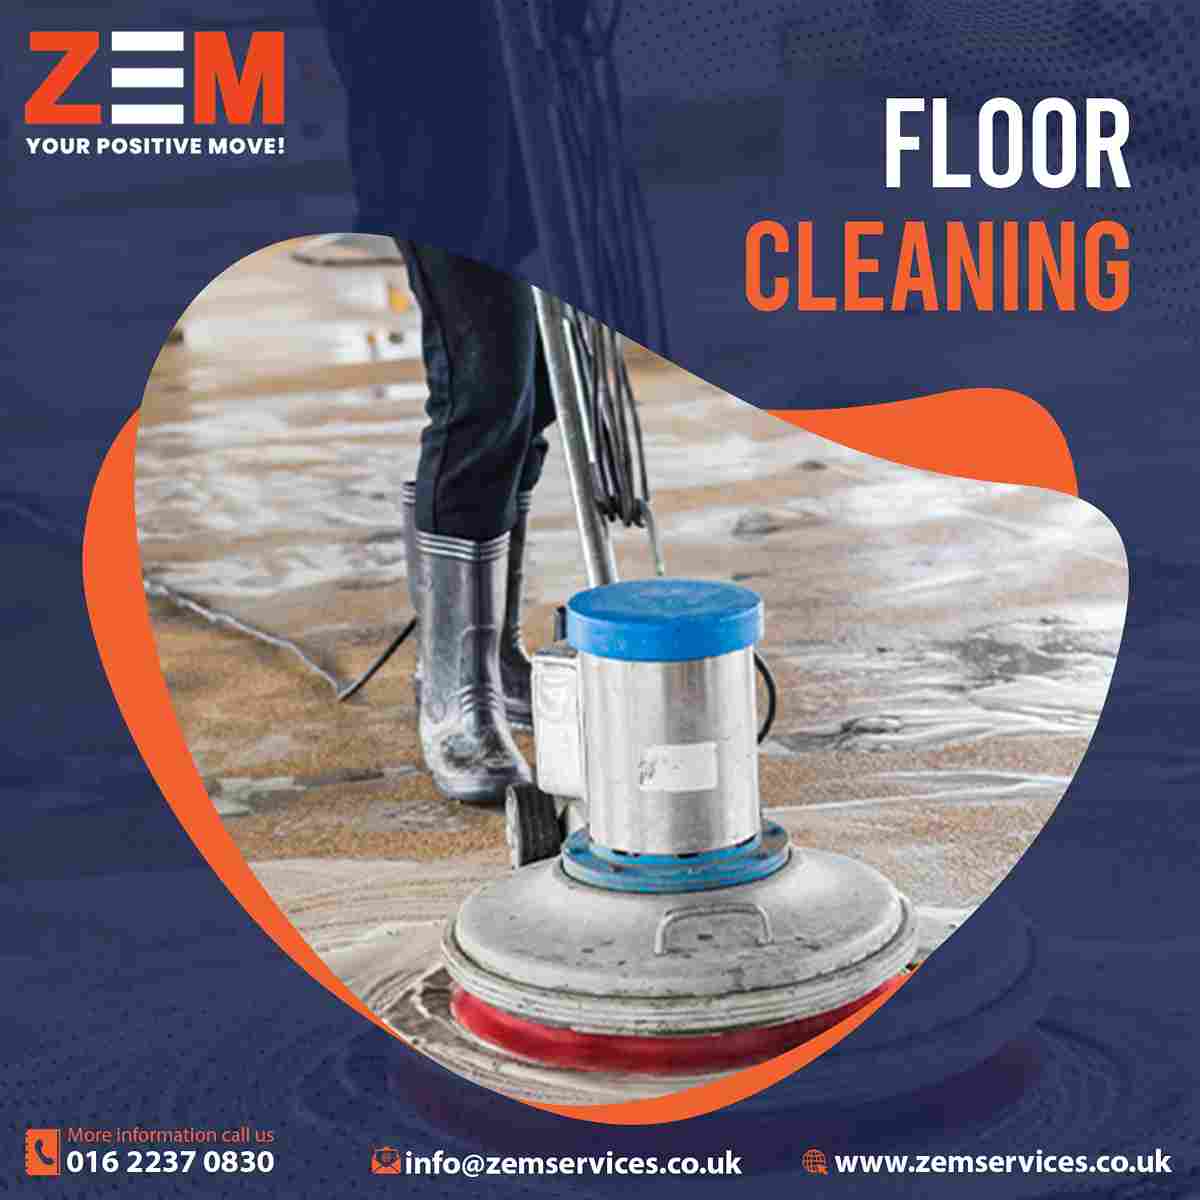 Zem Floor Cleaning